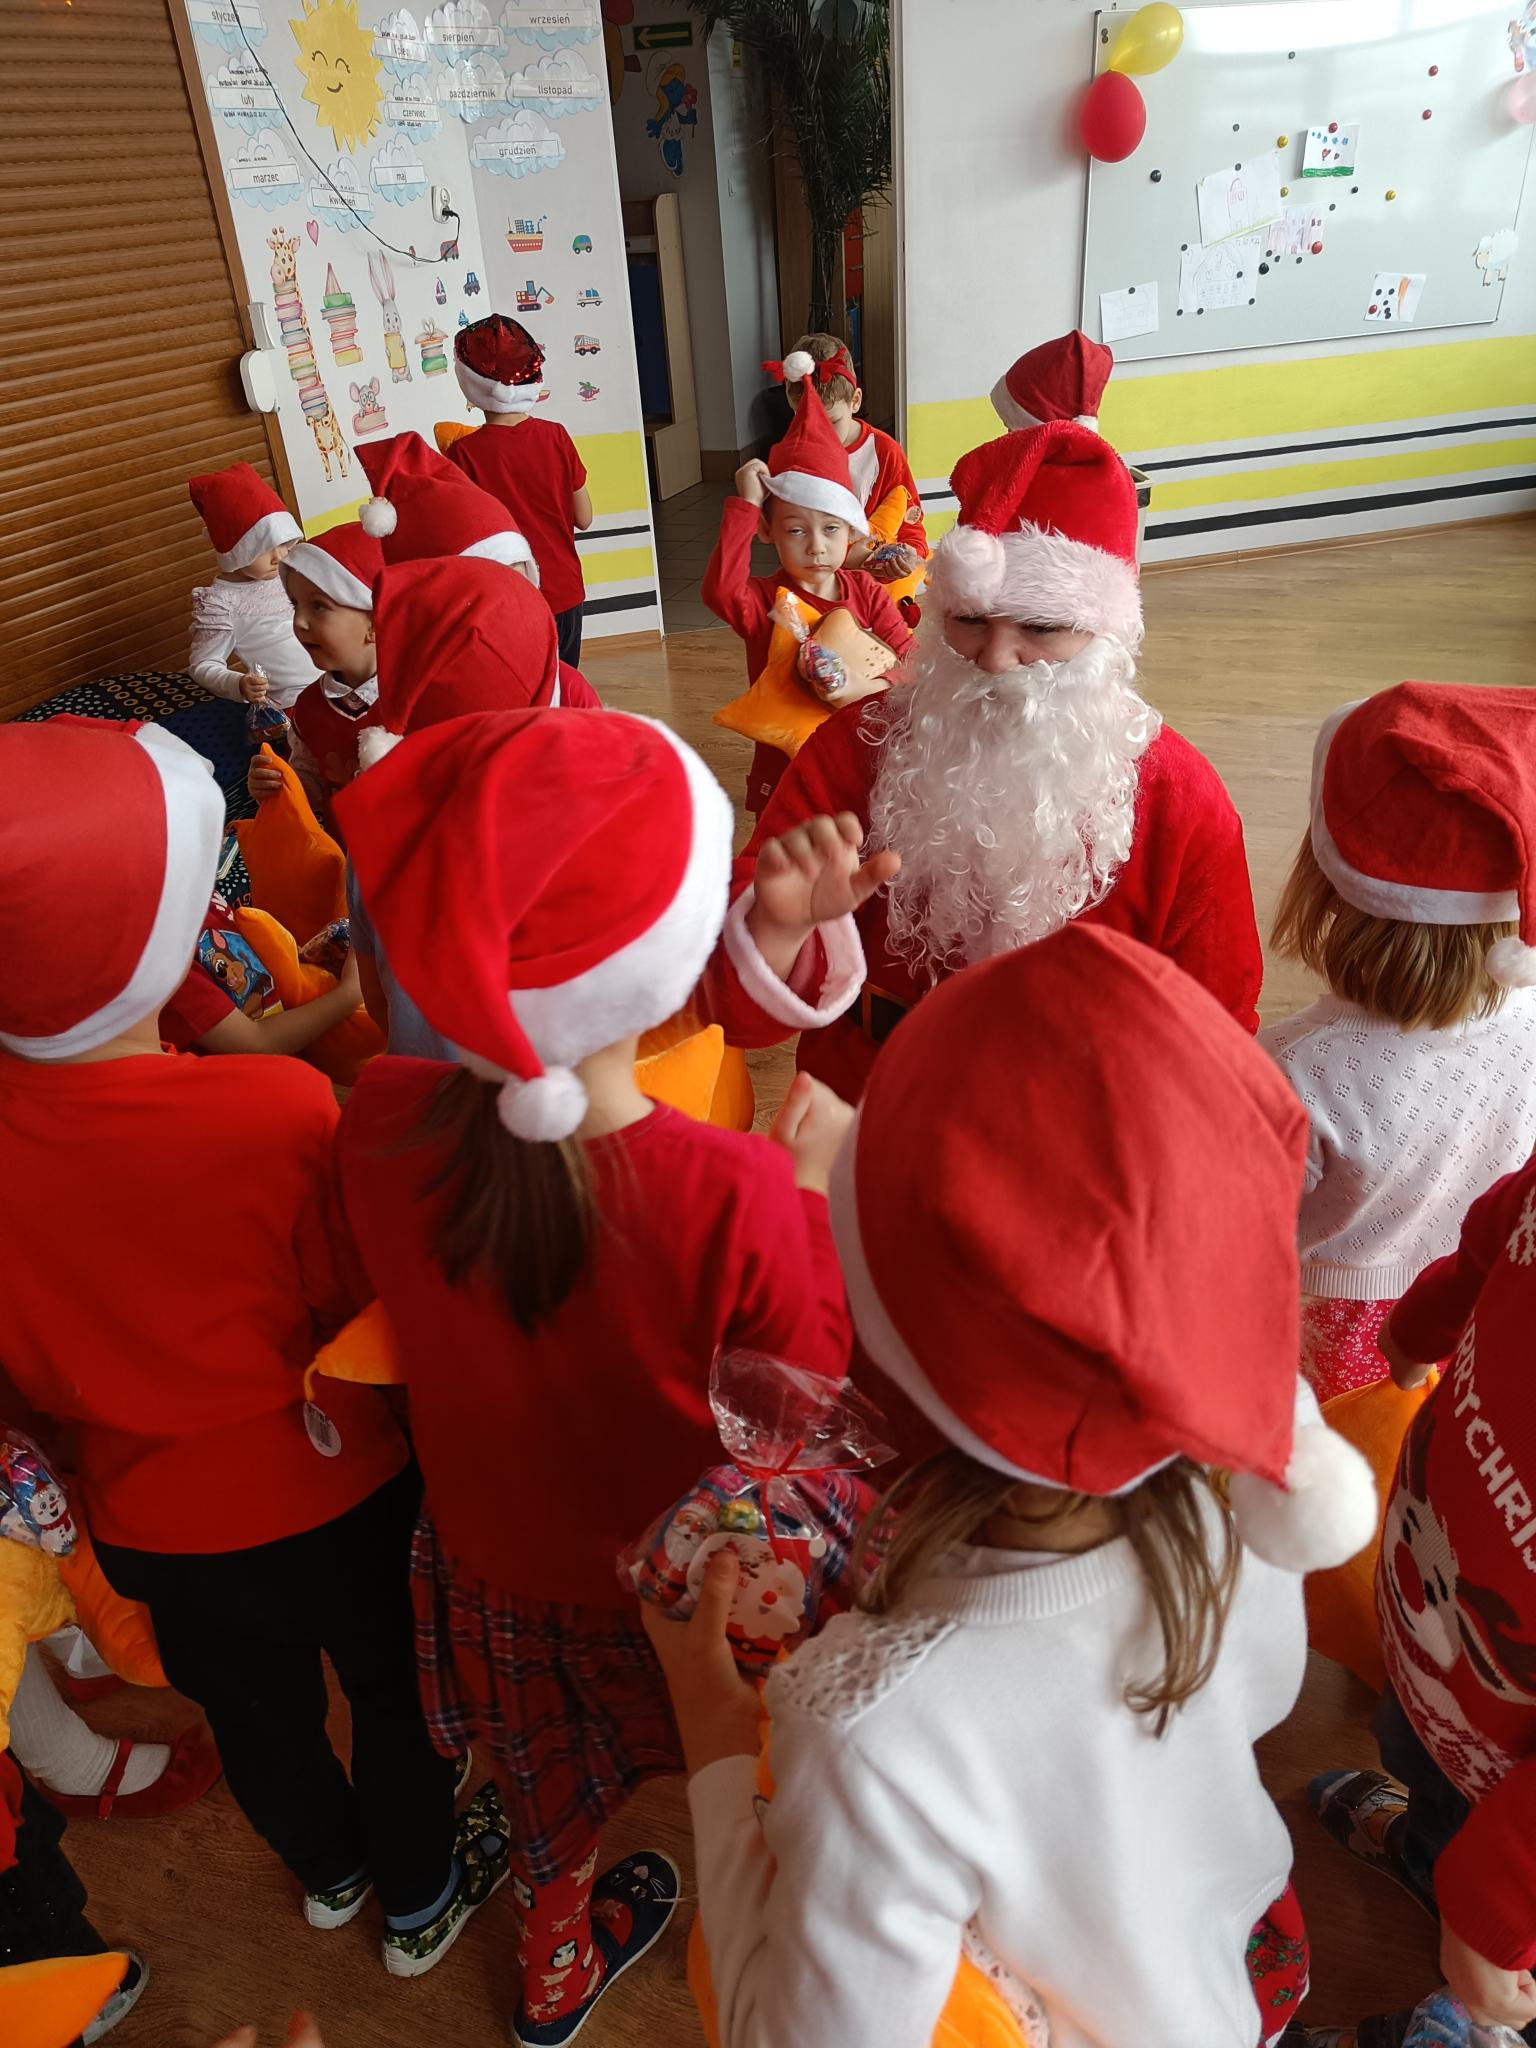 Mikołaj w przedszkolu | Wychowanek MOW przebrany za Mikołaja otoczony grupką dzieci w mikołajkowych czapkach.jpg